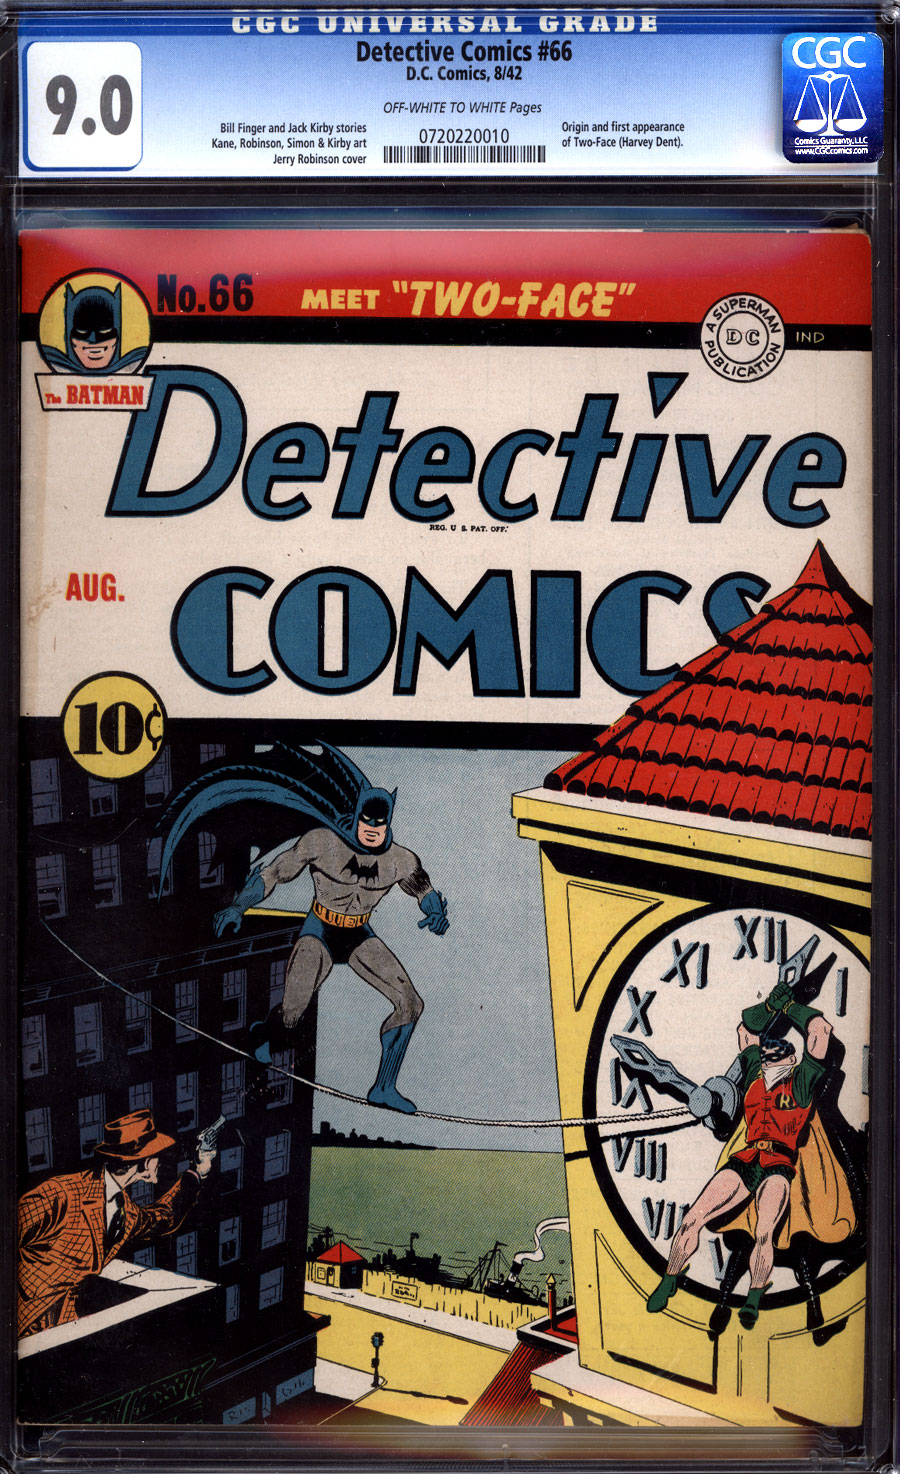 Detective comics #66